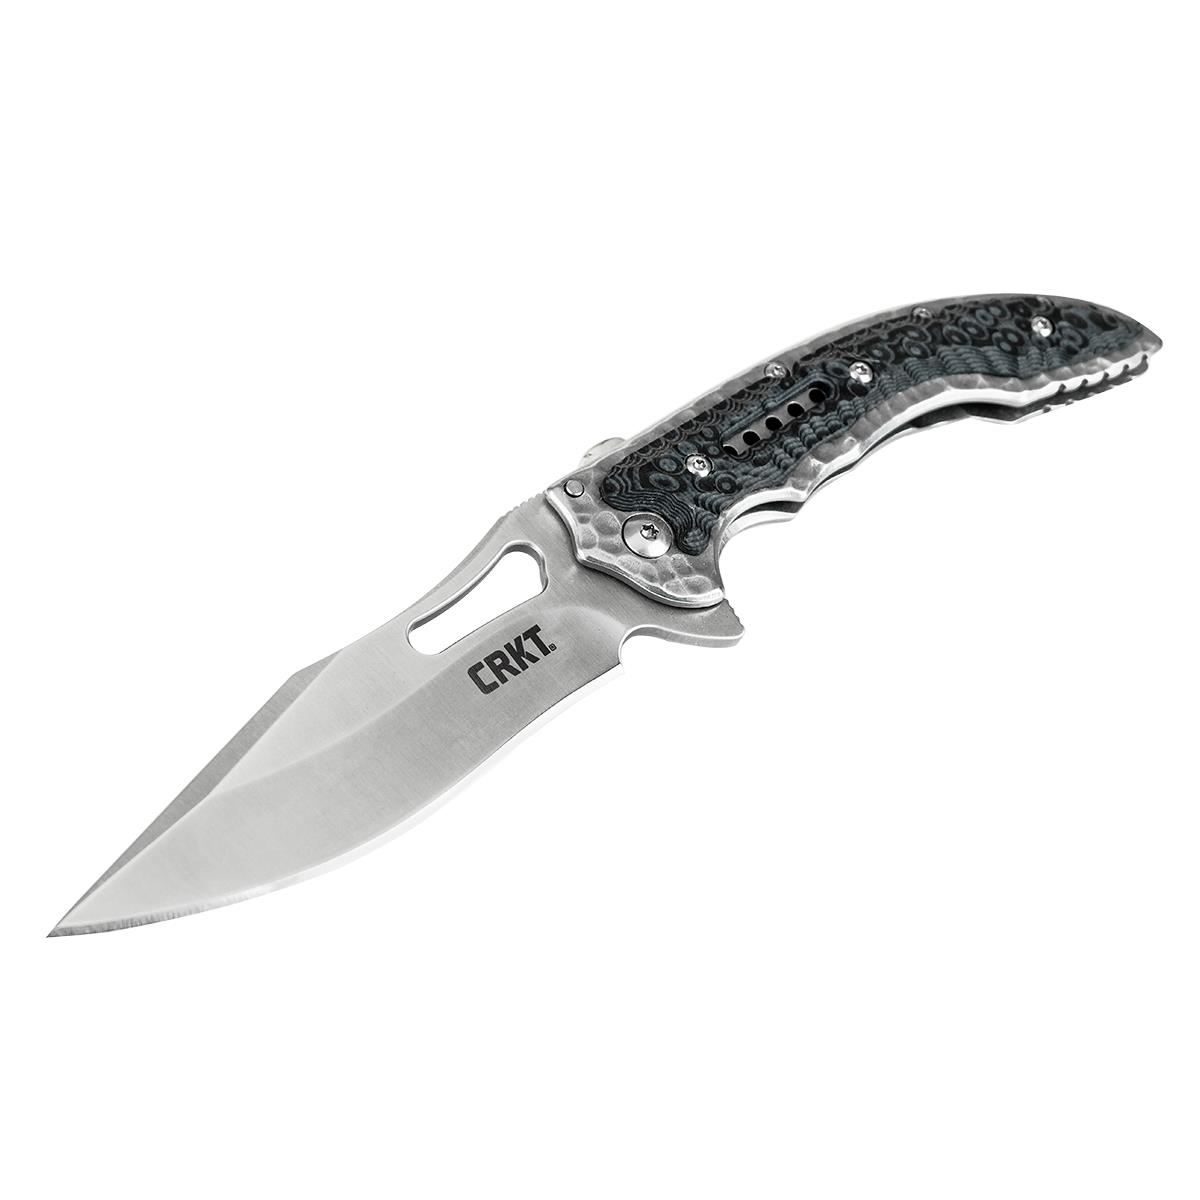 Нож Fossi складной, рук-ть сталь/G10, клинок 8Cr13MoV CRKT_5462 нож складной с отвертками